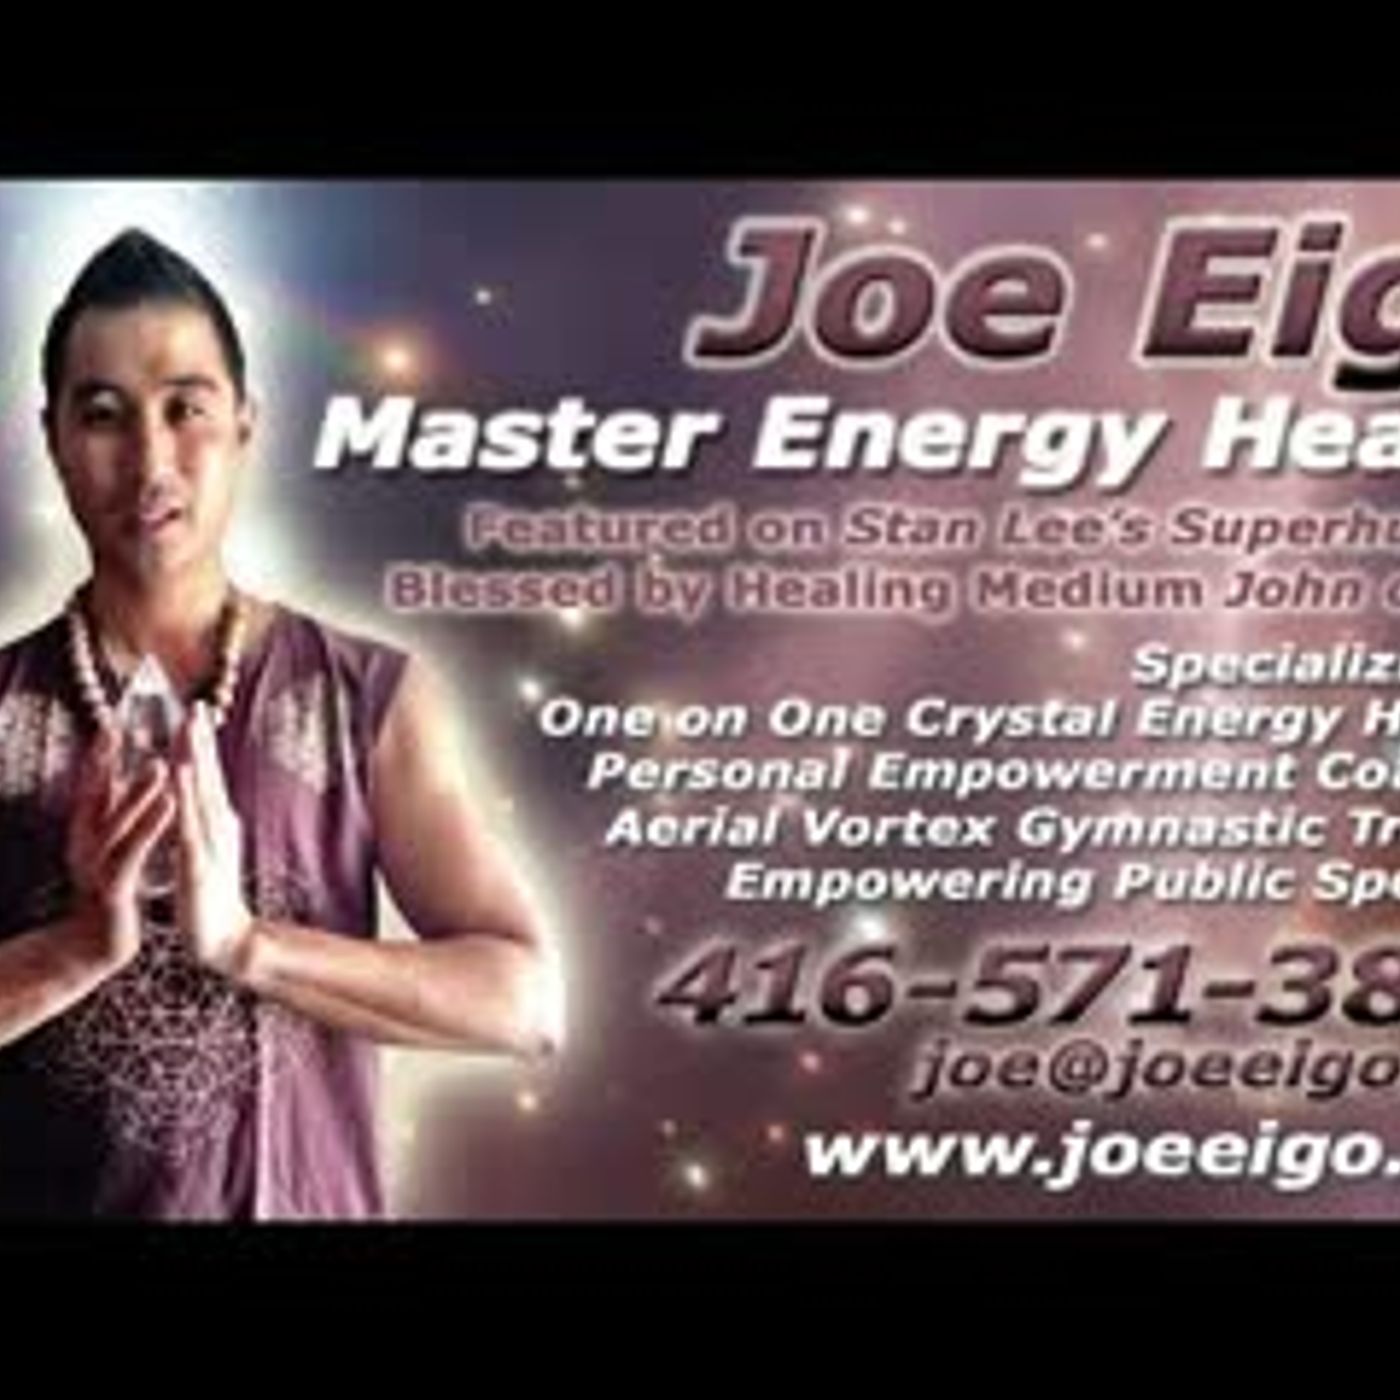 Master Energy Healer Joe Eigo!